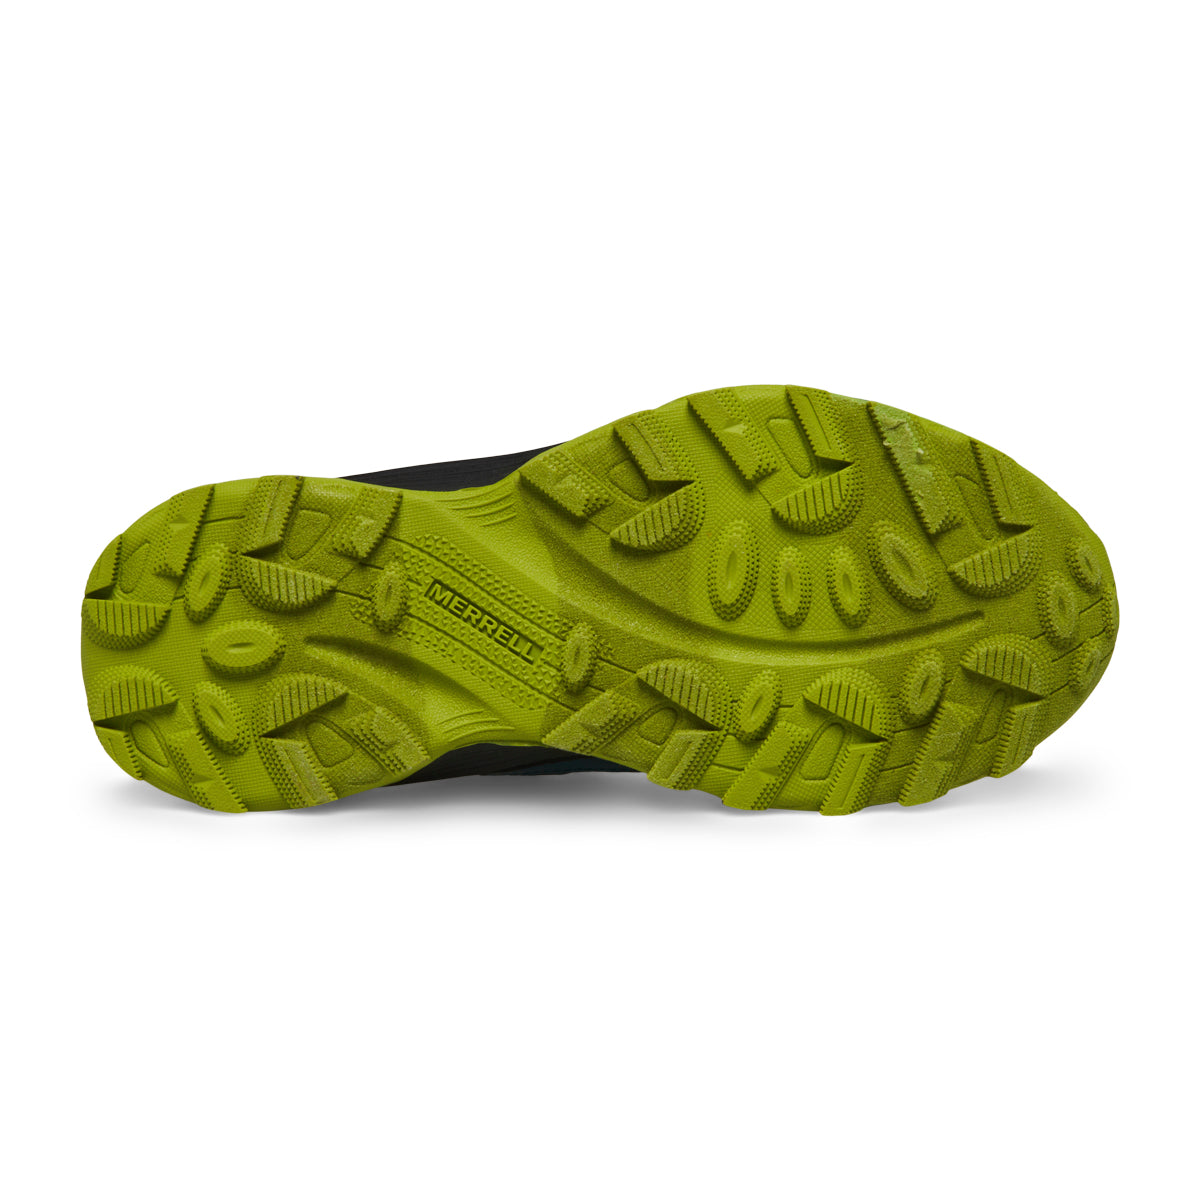 Moab Speed Low A/C Waterproof Sneaker